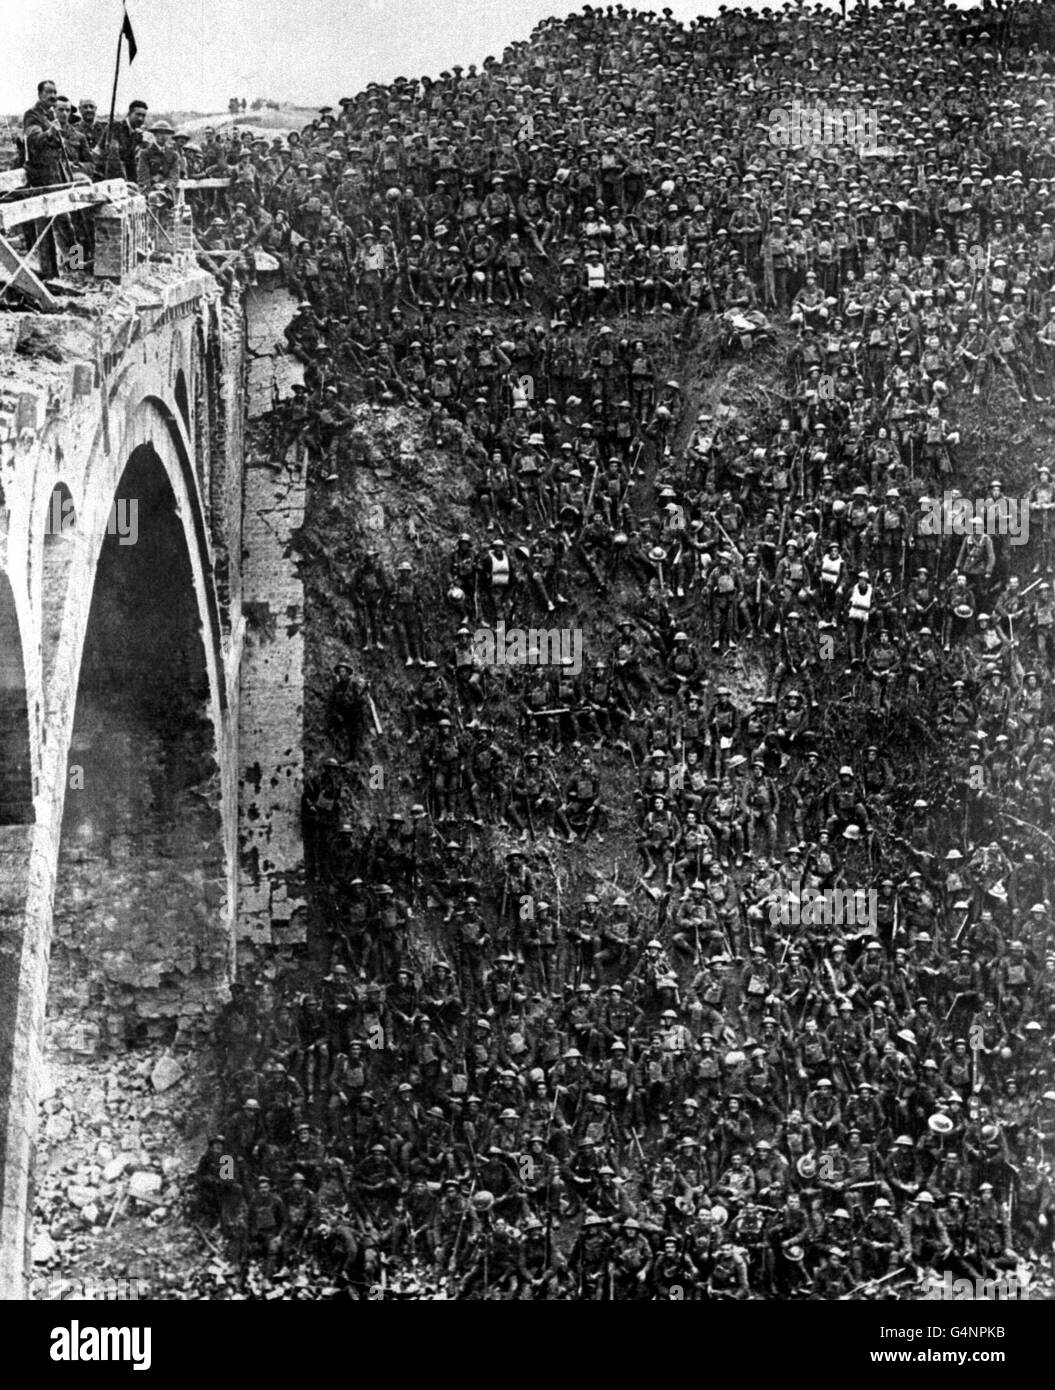 ST. QUENTIN CANAL1. Oktober 1918 : Brigadier- General J.V. Campbell (auf der Brücke) gratuliert Soldaten der 46. (North Midland) Division in Riqueval nach ihrer erfolgreichen Überquerung des St. Quentin Kanals. Einige Männer tragen immer noch ihre Rettungswesten und tragen deutsche Helme als Andenken. Stockfoto